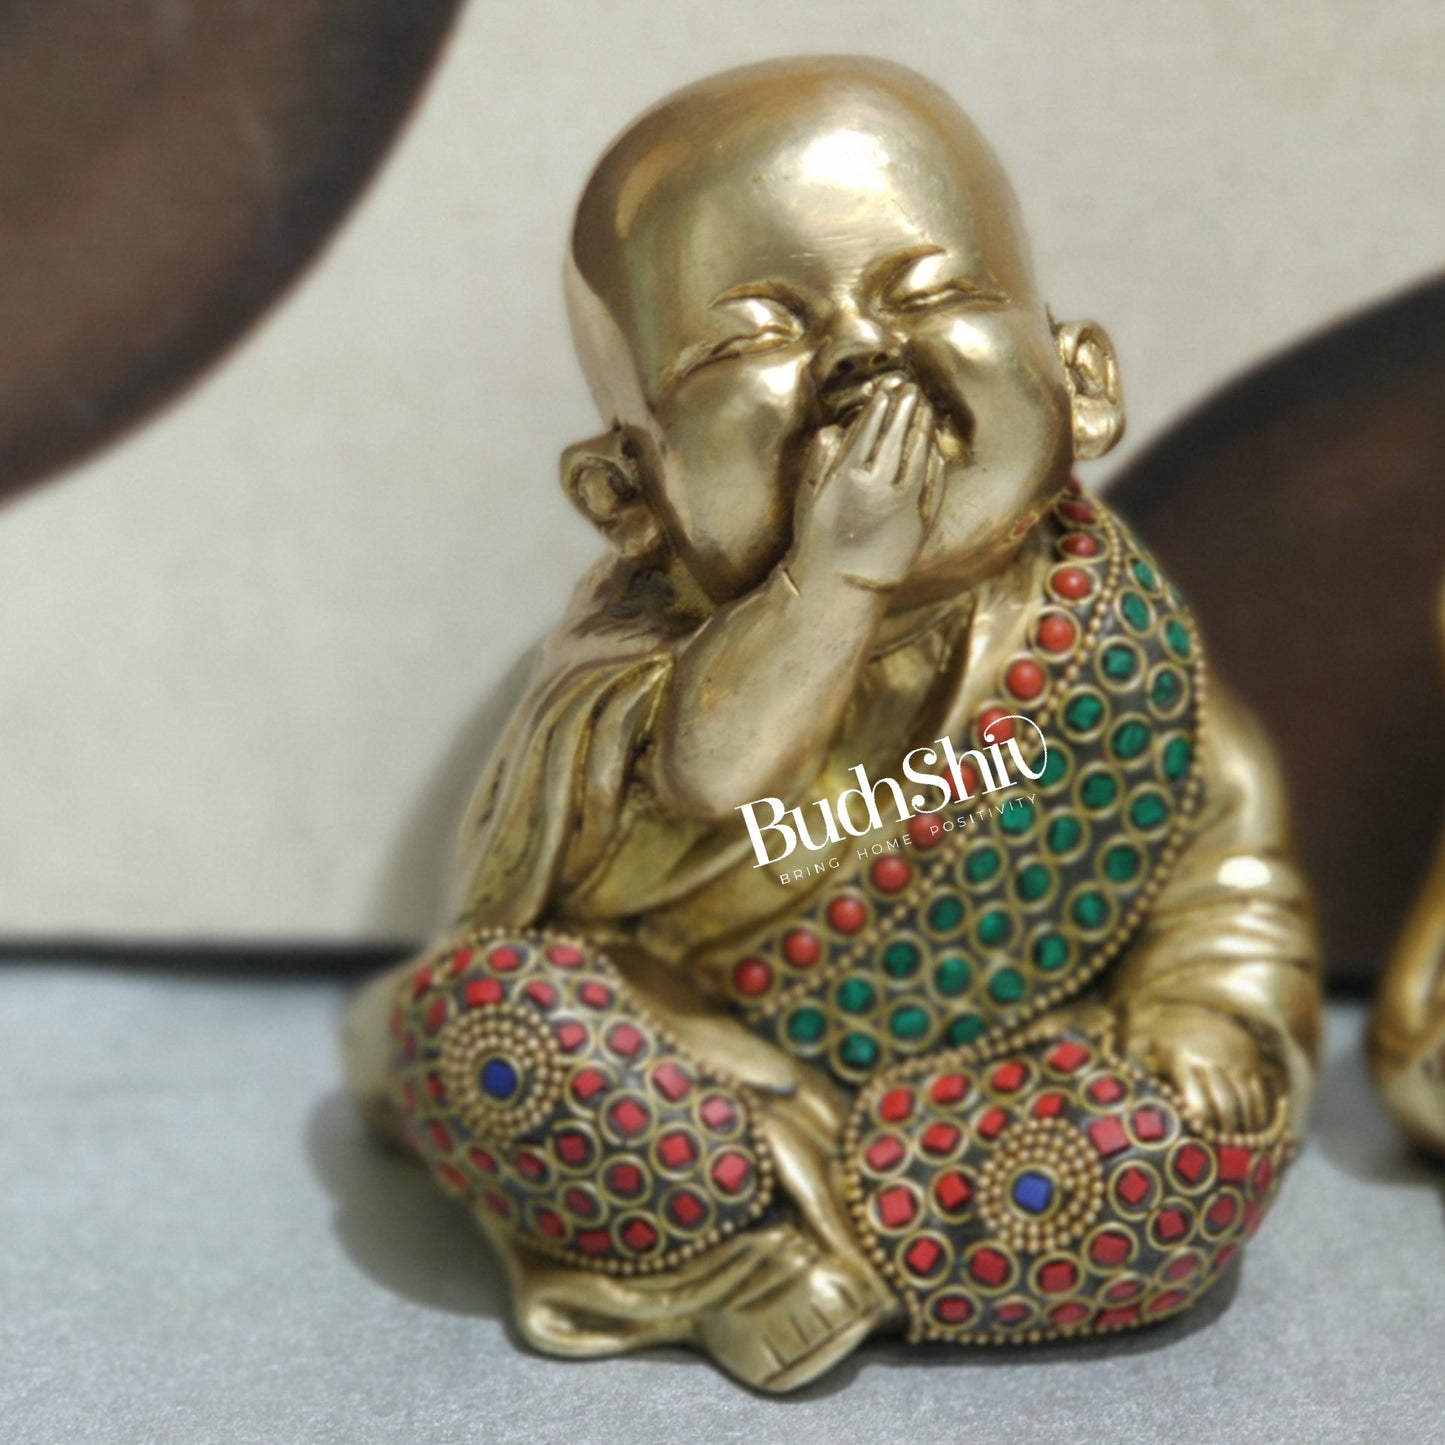 Baby Laughing Buddha Monks Brass Statues | BudhShiv - Budhshiv.com